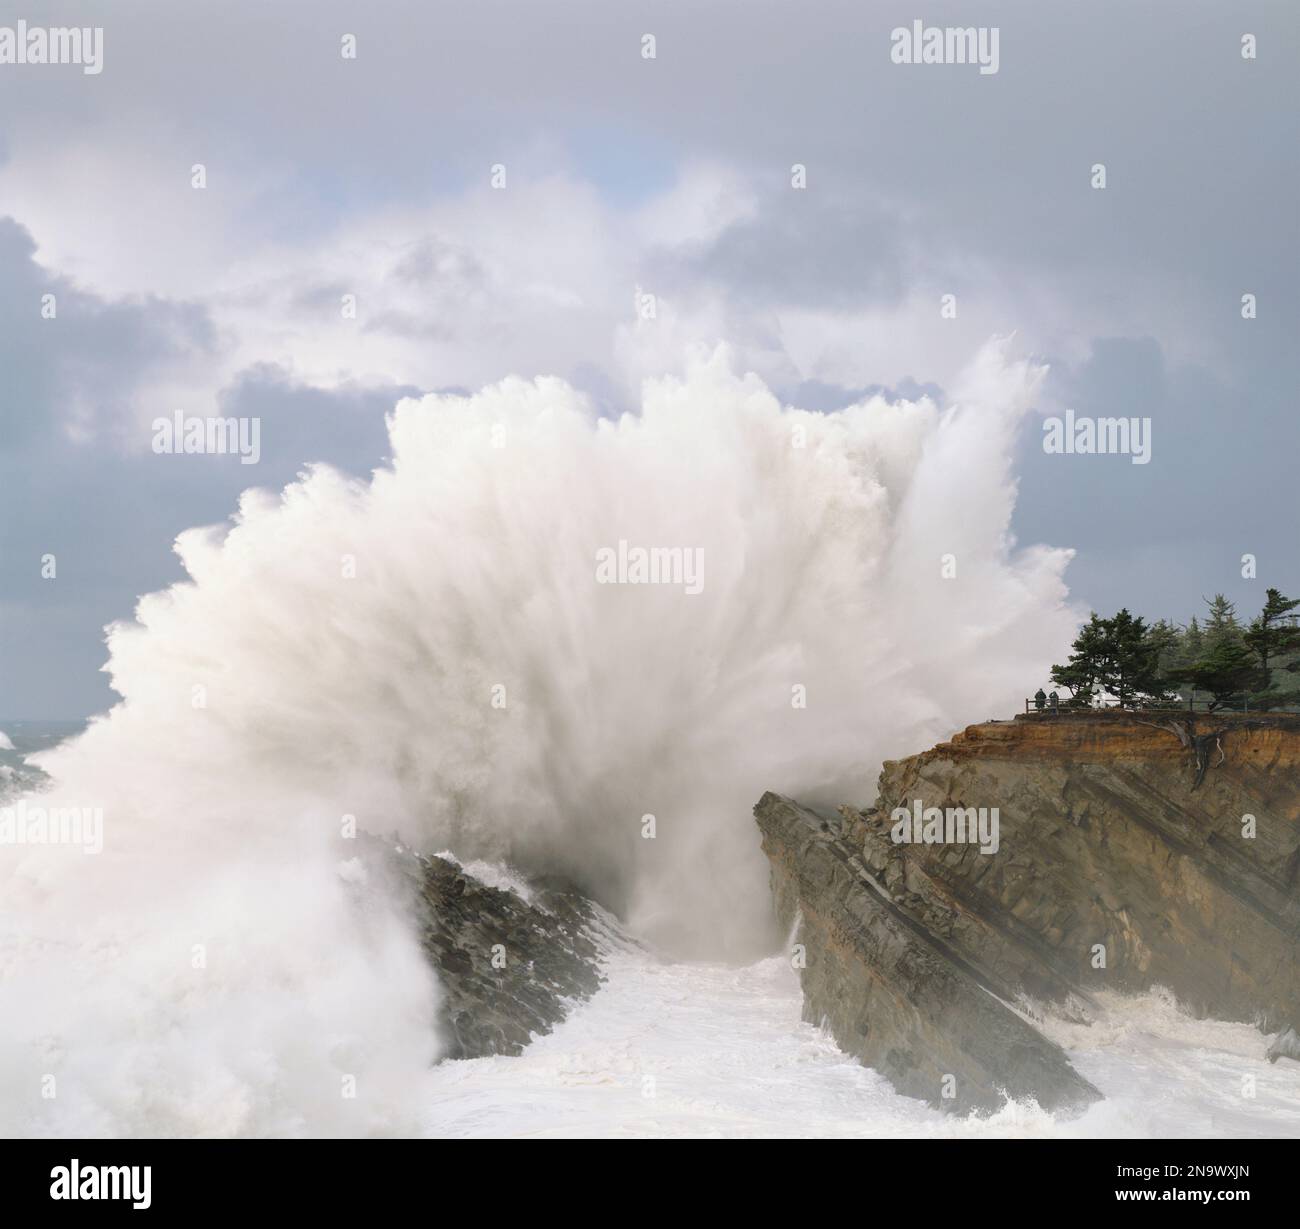 Une puissante vague se brise contre les rochers au parc national de Shore Acres alors que les touristes se tiennent à un point de vue en regardant les éclaboussures intenses, la côte de l'Oregon Banque D'Images